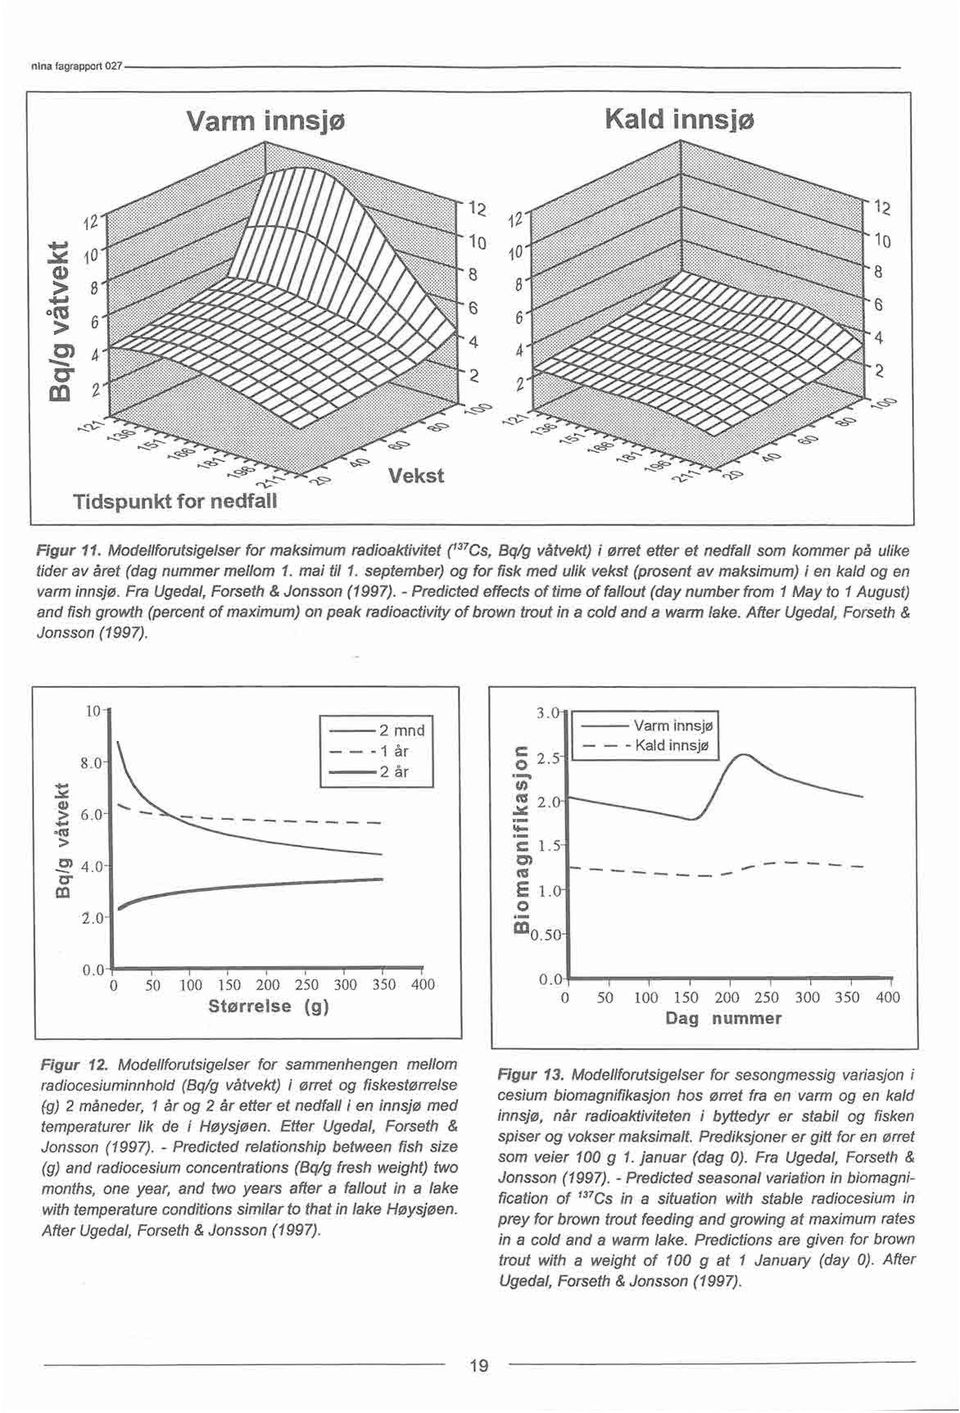 september) og for fisk med ulik vekst (prosentav maksimum)i en kald og en varminnsjø.fra Ugedal,Forseth & Jonsson(1997).